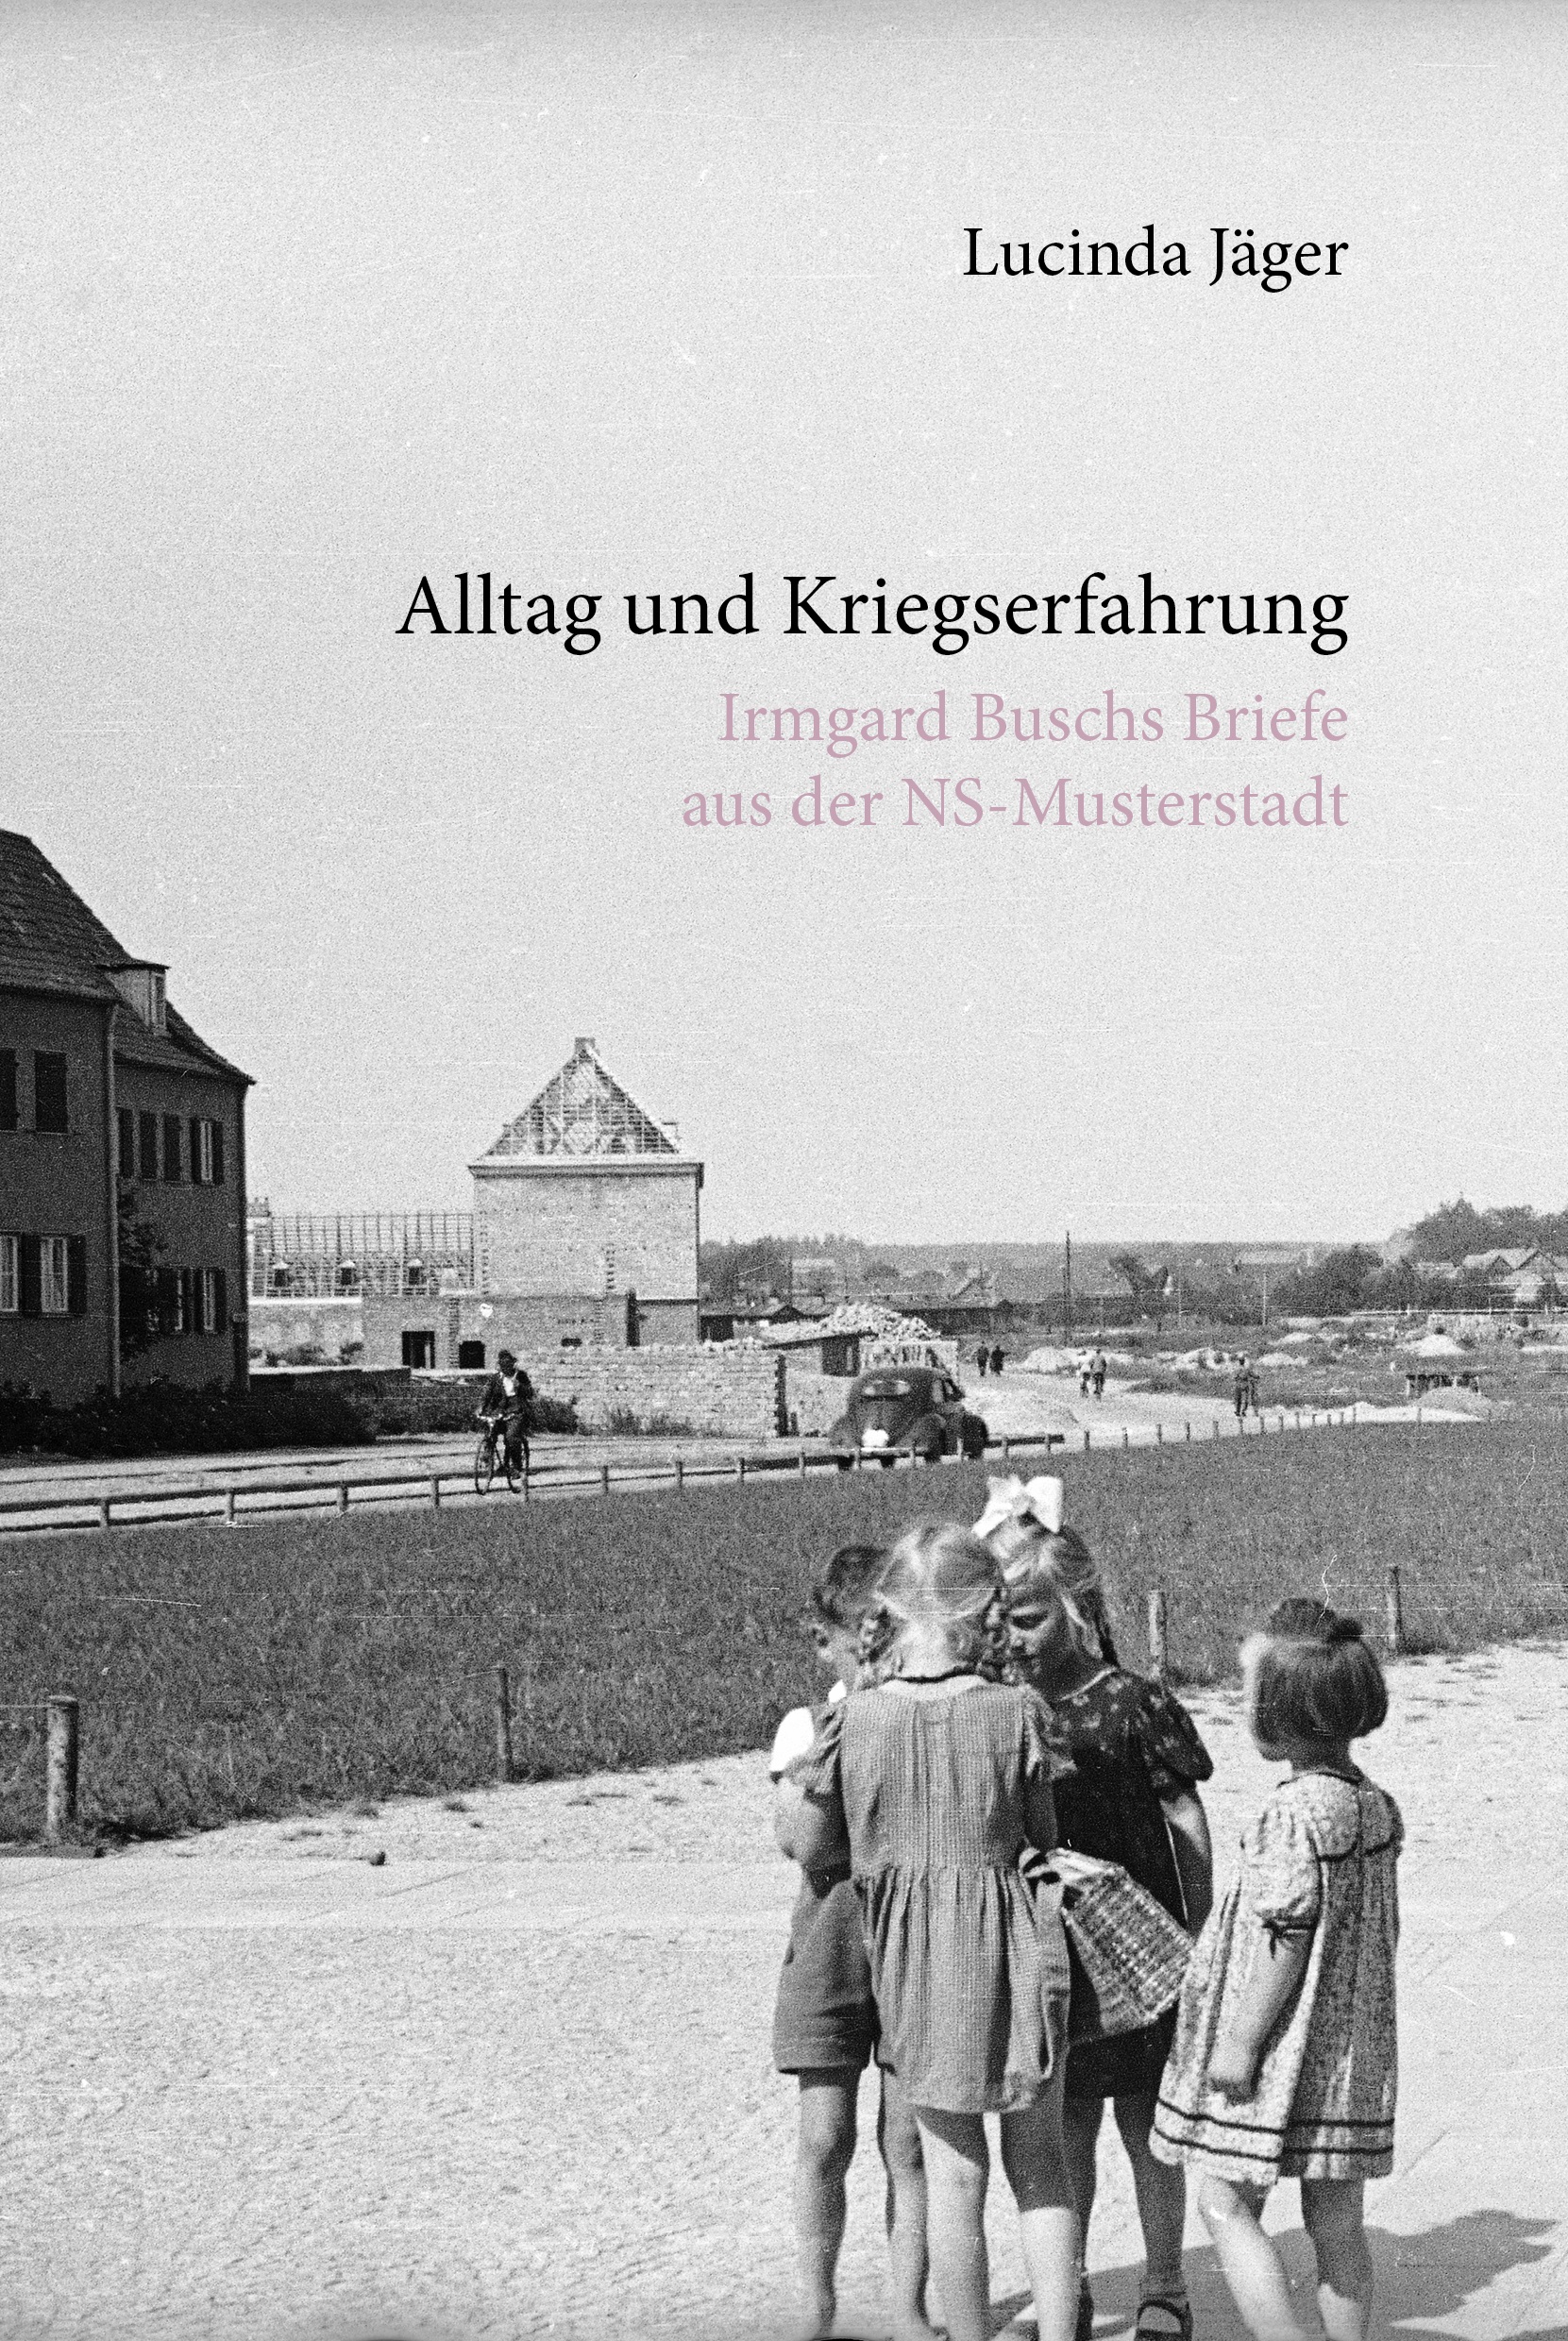 Titelblatt des Buchs "Alltag und Kriegserfahrung – Irmgard Buschs Briefe aus der NS-Musterstadt"